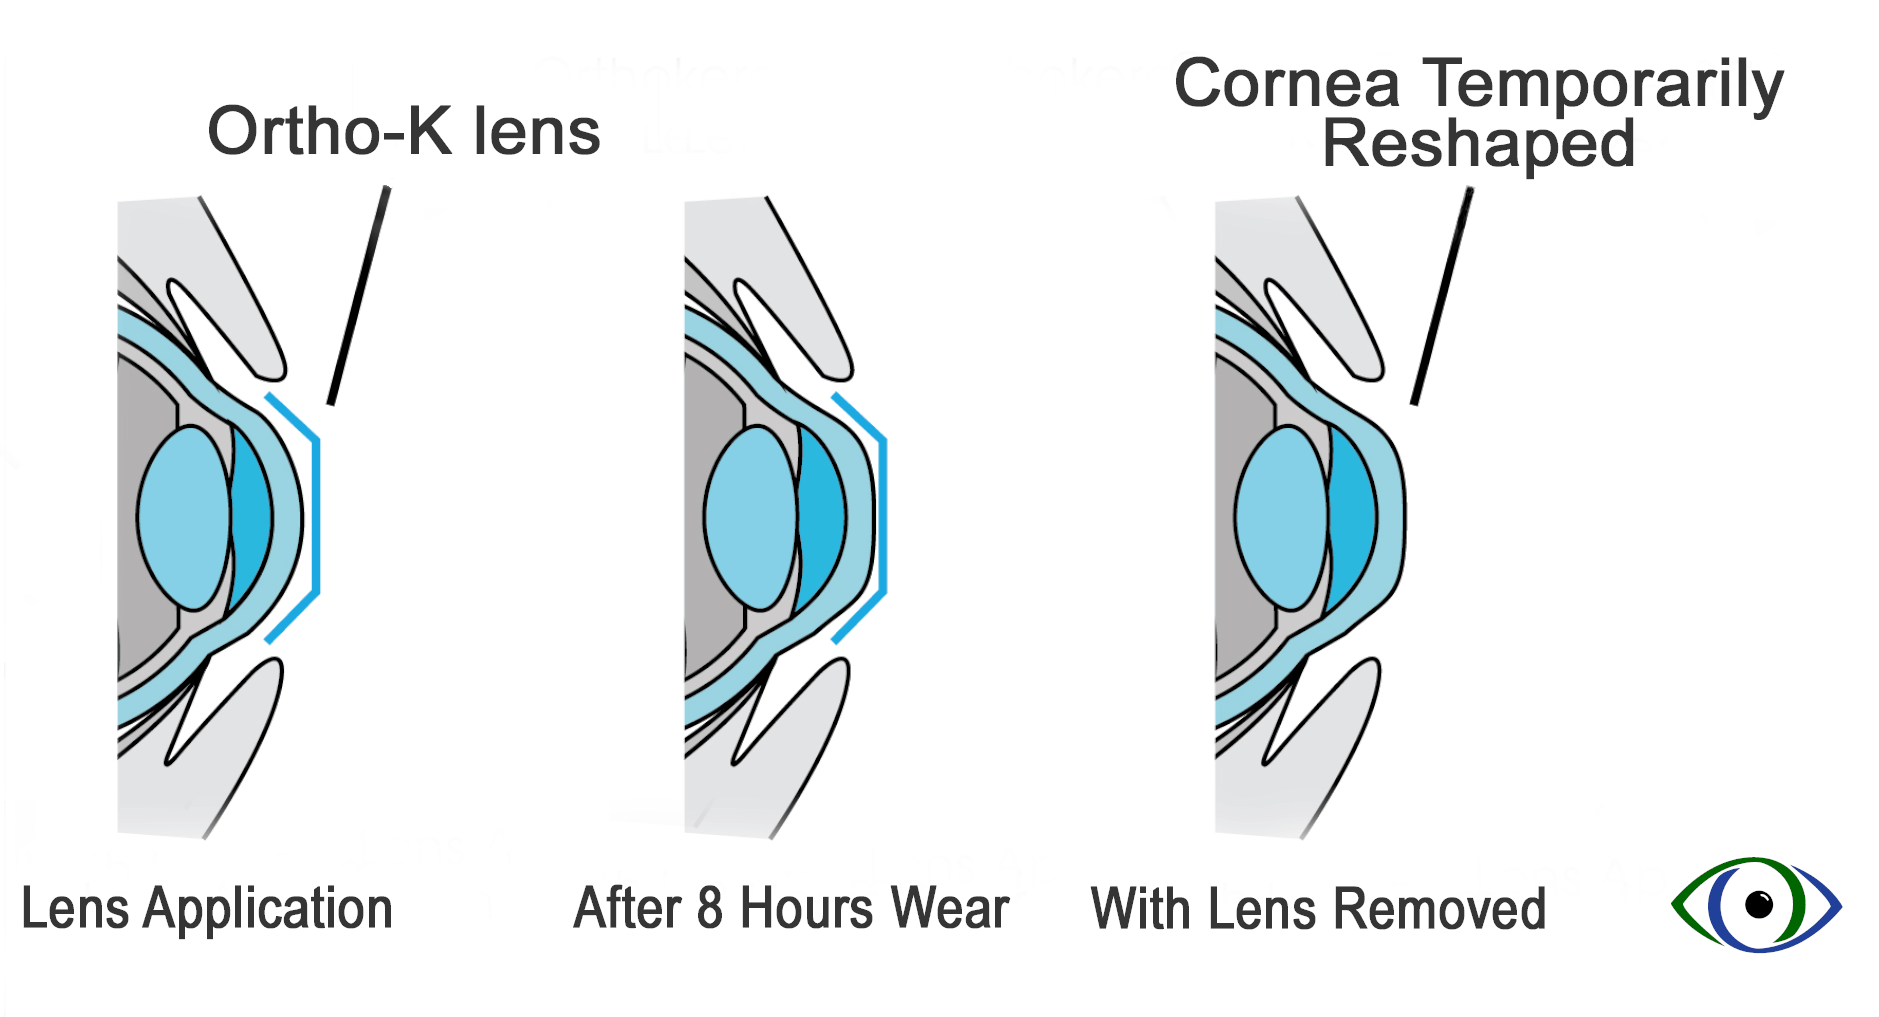 Коррекция зрения с помощью линз. Ночные линзы для восстановления зрения принцип действия. Принцип работы ночных линз. Как работают ортокератологические линзы. Ночные жесткие линзы для восстановления зрения.